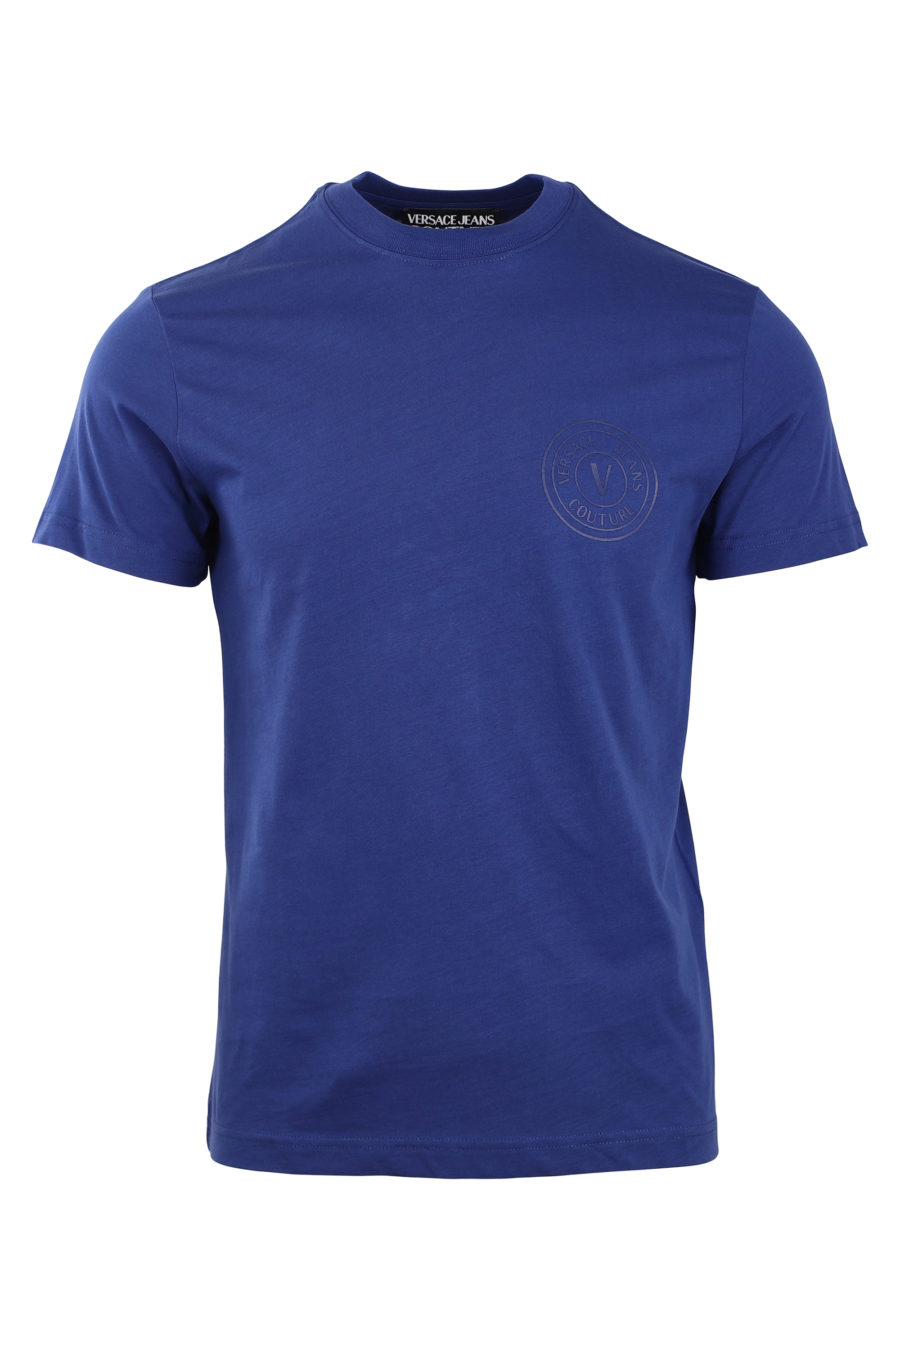 T-shirt azul-marinho com pequeno logótipo redondo - IMG 0769